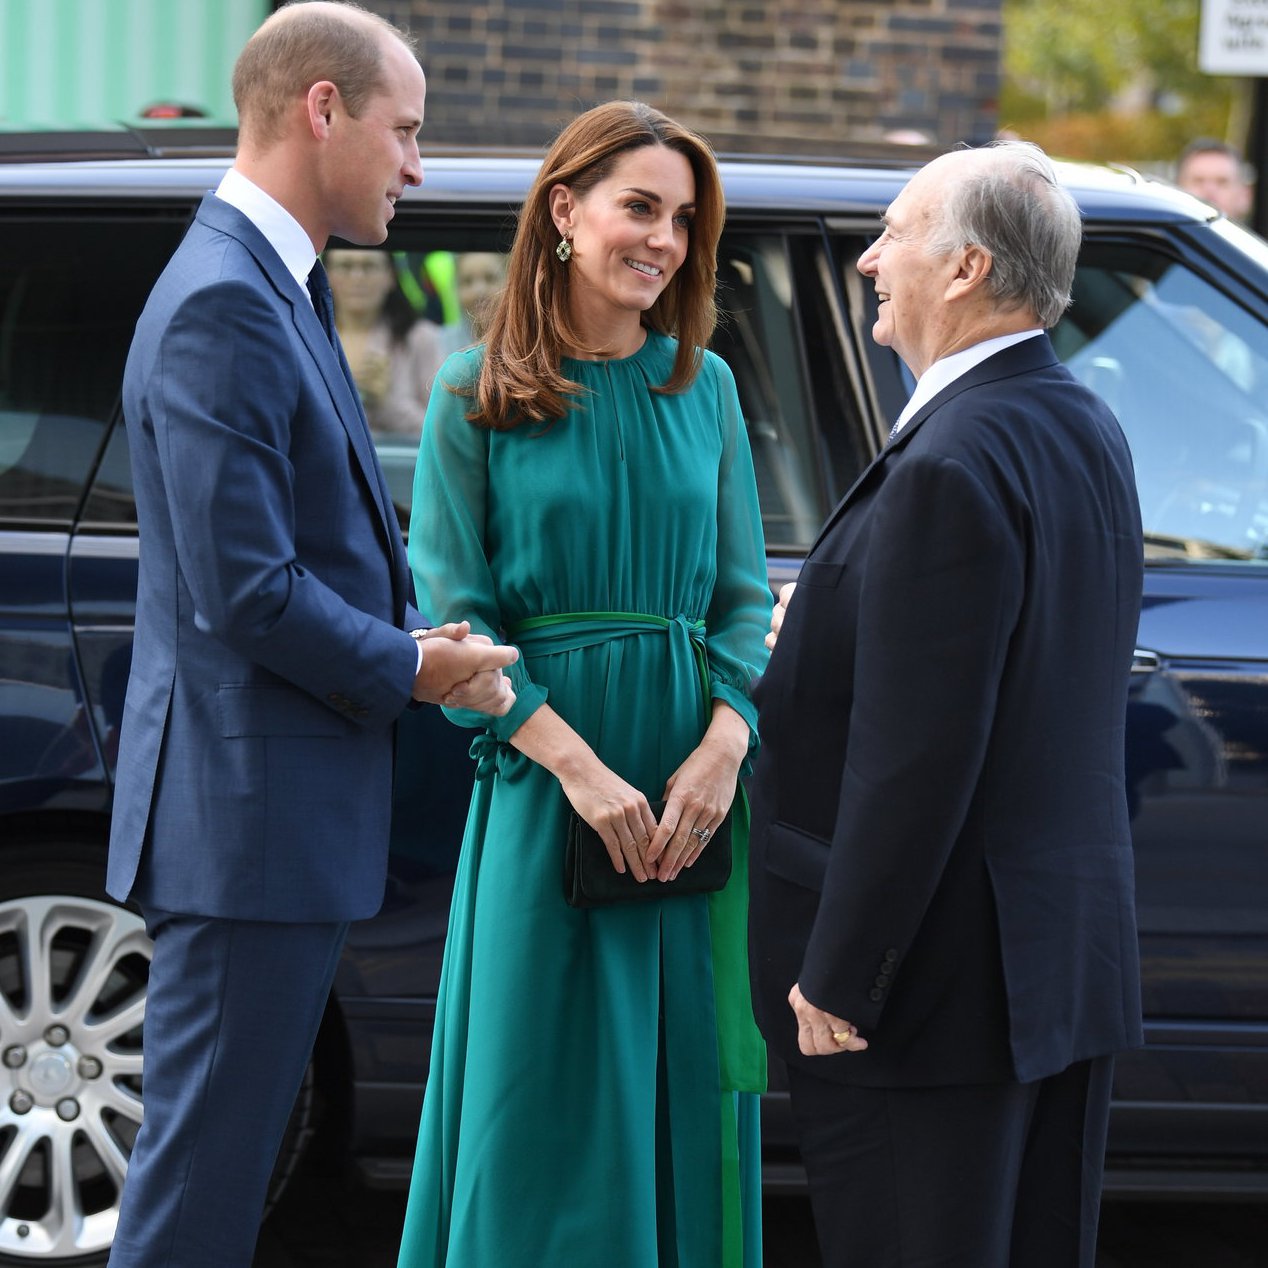 活潑的藍綠色如何穿出知性優雅的氣質？來看2位「時尚女王」凱特王妃與<u>阿拉瑪汀</u>怎麼穿